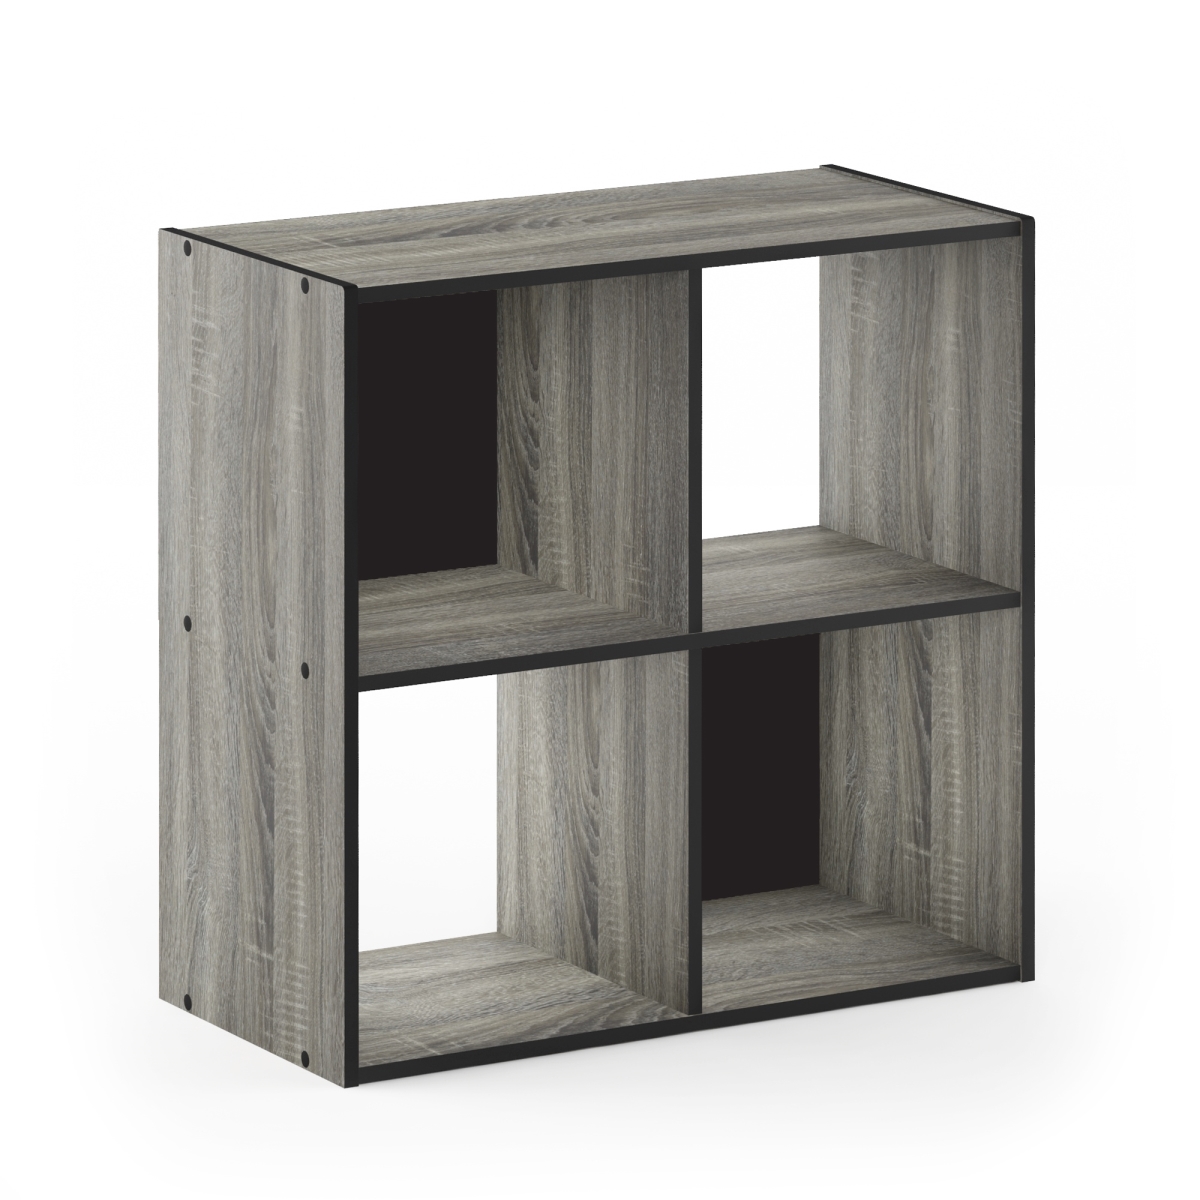 18051gyw 2 X 2 In. Pelli Cubic Storage Cabinet, French Oak Grey & Black